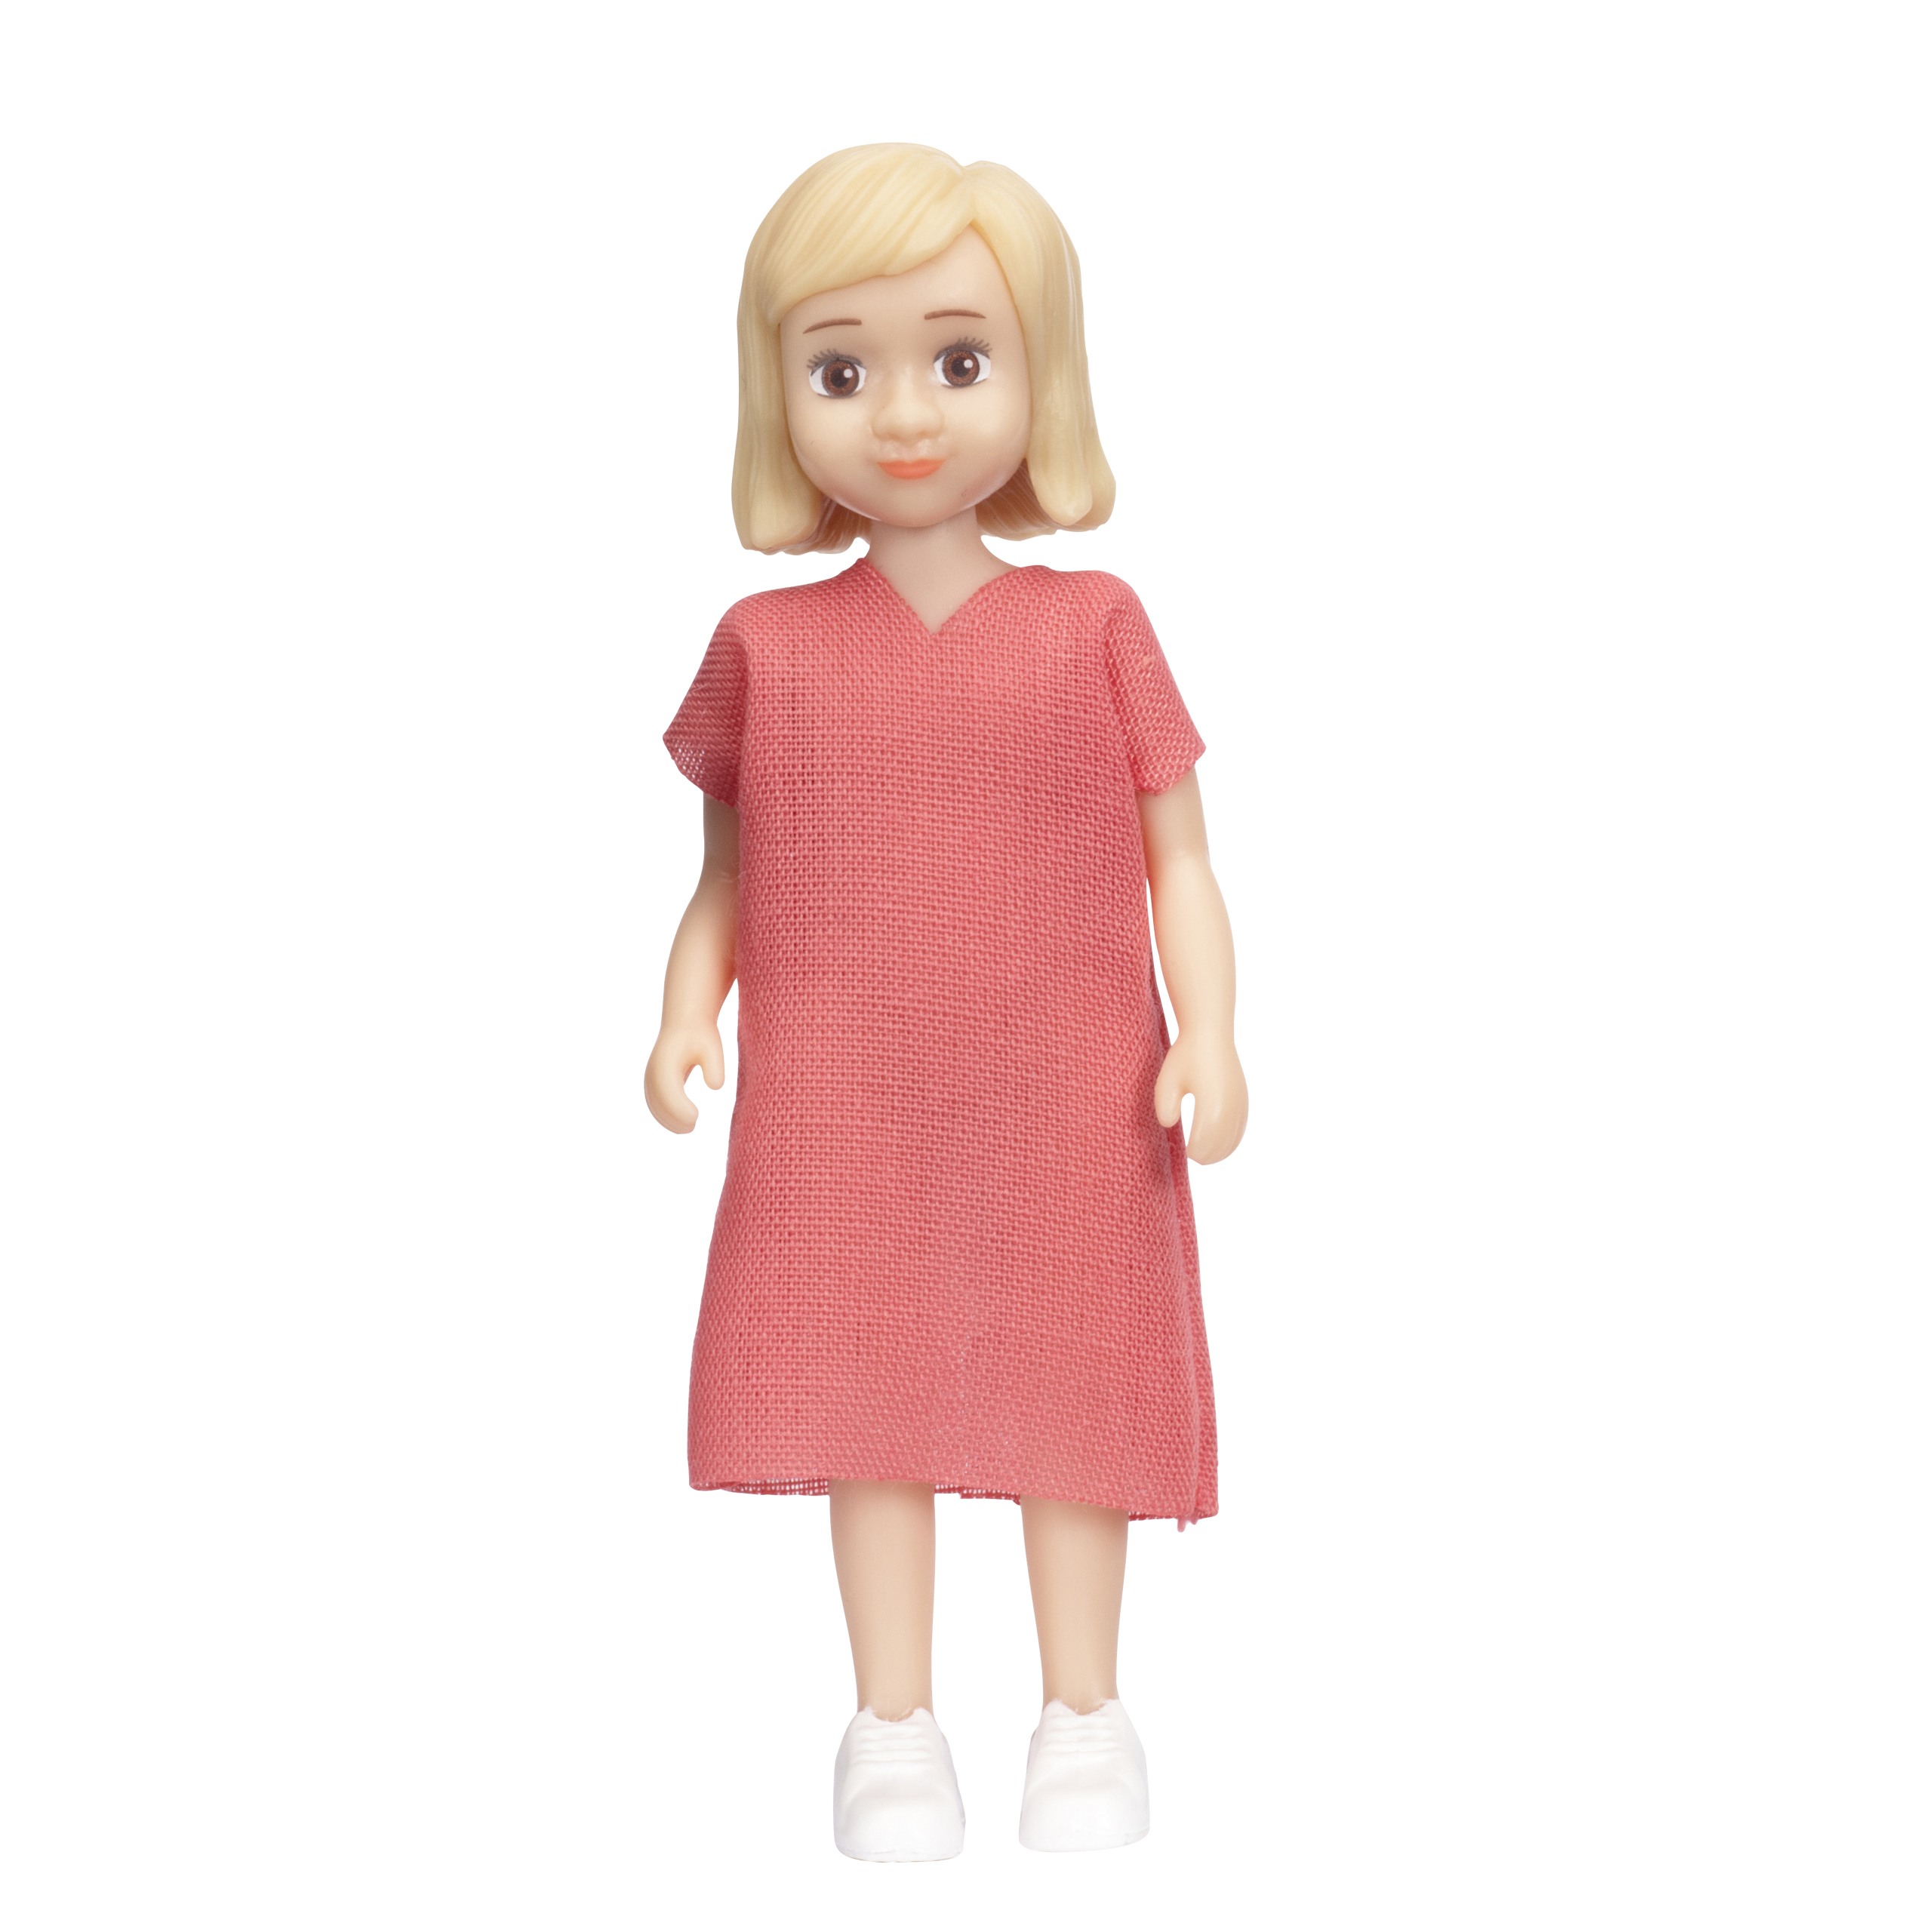 Dollhouse dolls & animals	 lundby dollhouse doll charlie girl